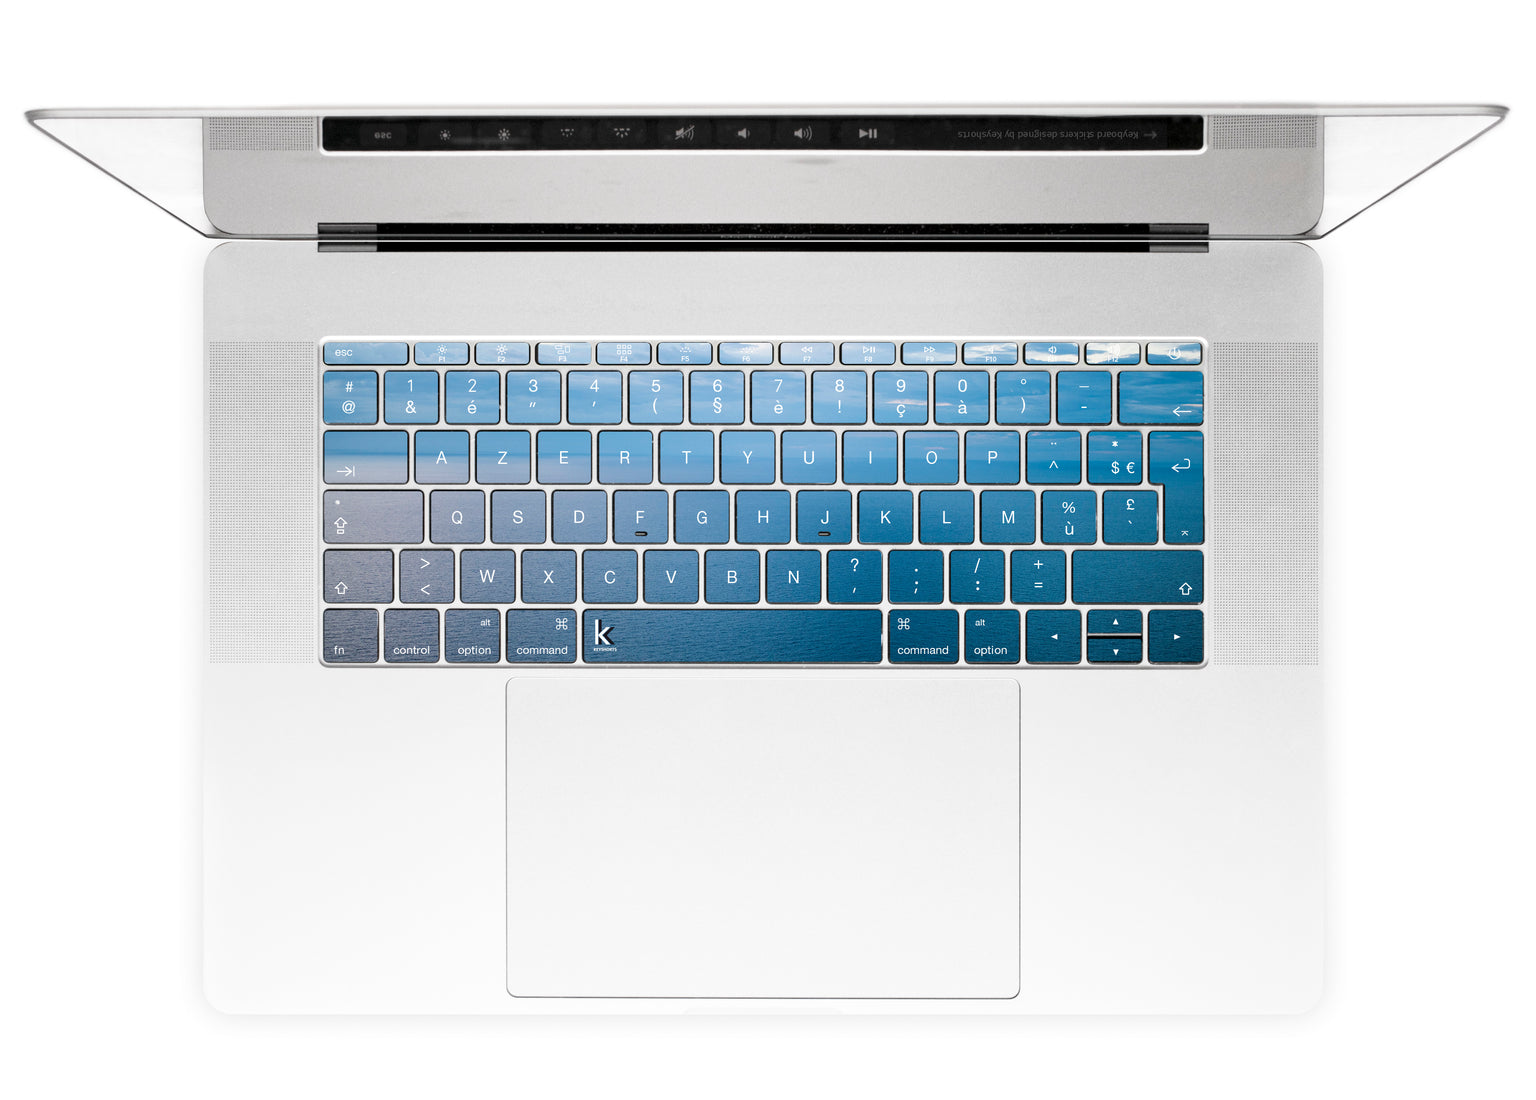 Pastel Ocean MacBook Keyboard Stickers alternate FR